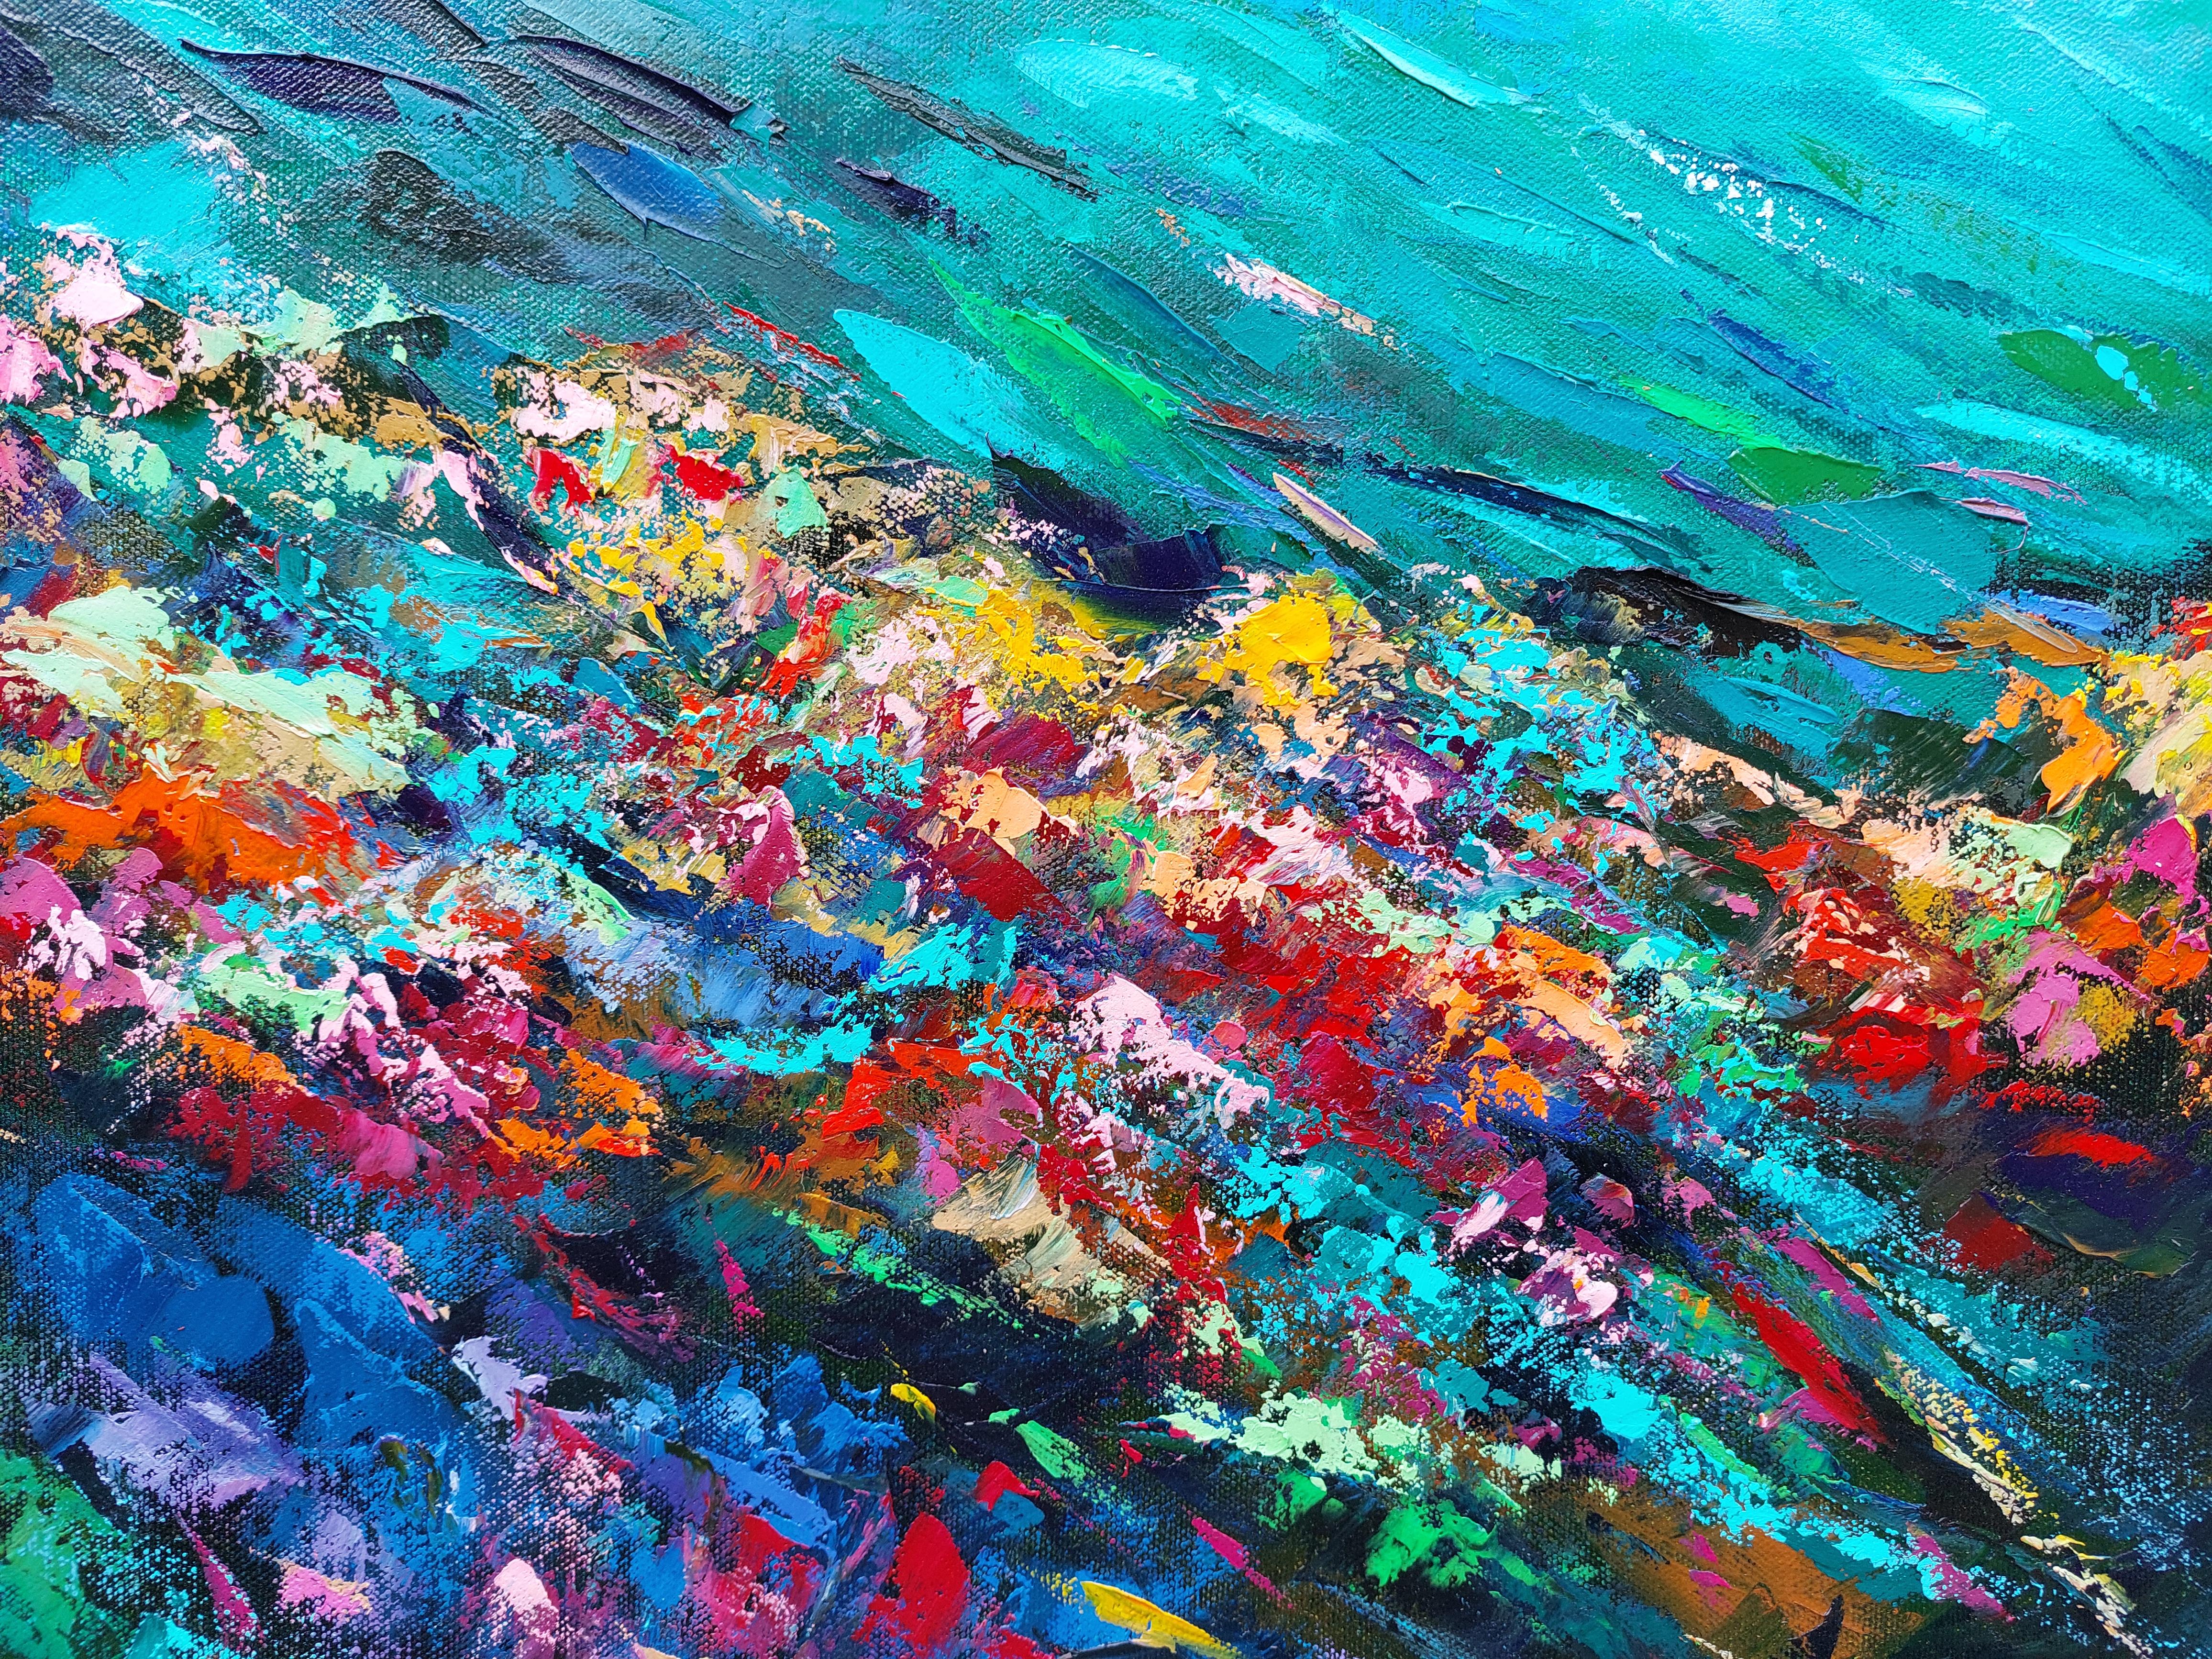 Tropisches Korallenriff Gemälde von Olga Nikitina
Titel: Korallenriff
Größe: 100x75cm
MATERIALIEN: Öl, gerolltes Segeltuch, Palettenmesser.
Versand: galerieübliche Verpackung, gerollt im Rohr, Expressversand mit Tracking-Nummer. 
Erweitern Sie Ihre